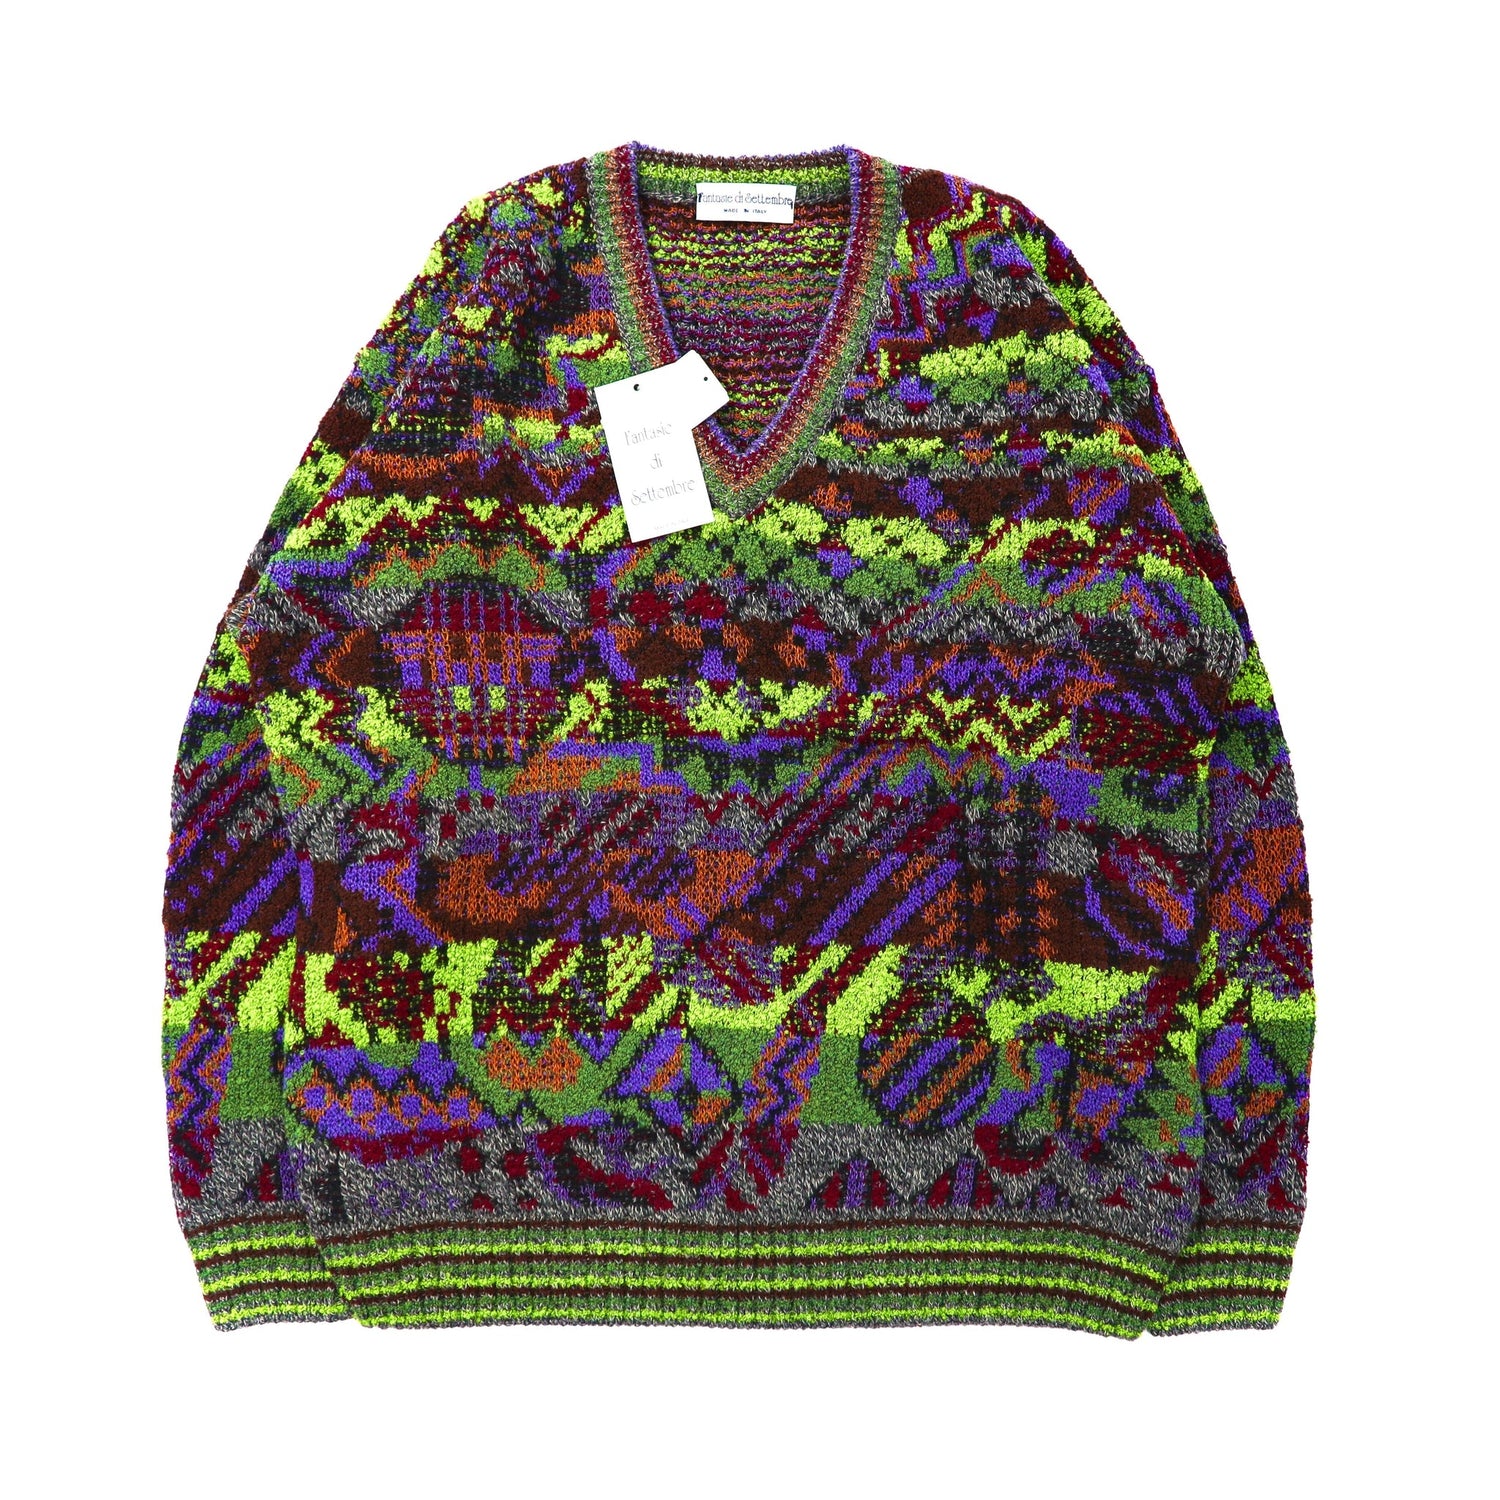 Fantasie Di SetTembre Total Pattern Knit Sweater M Multi-Color